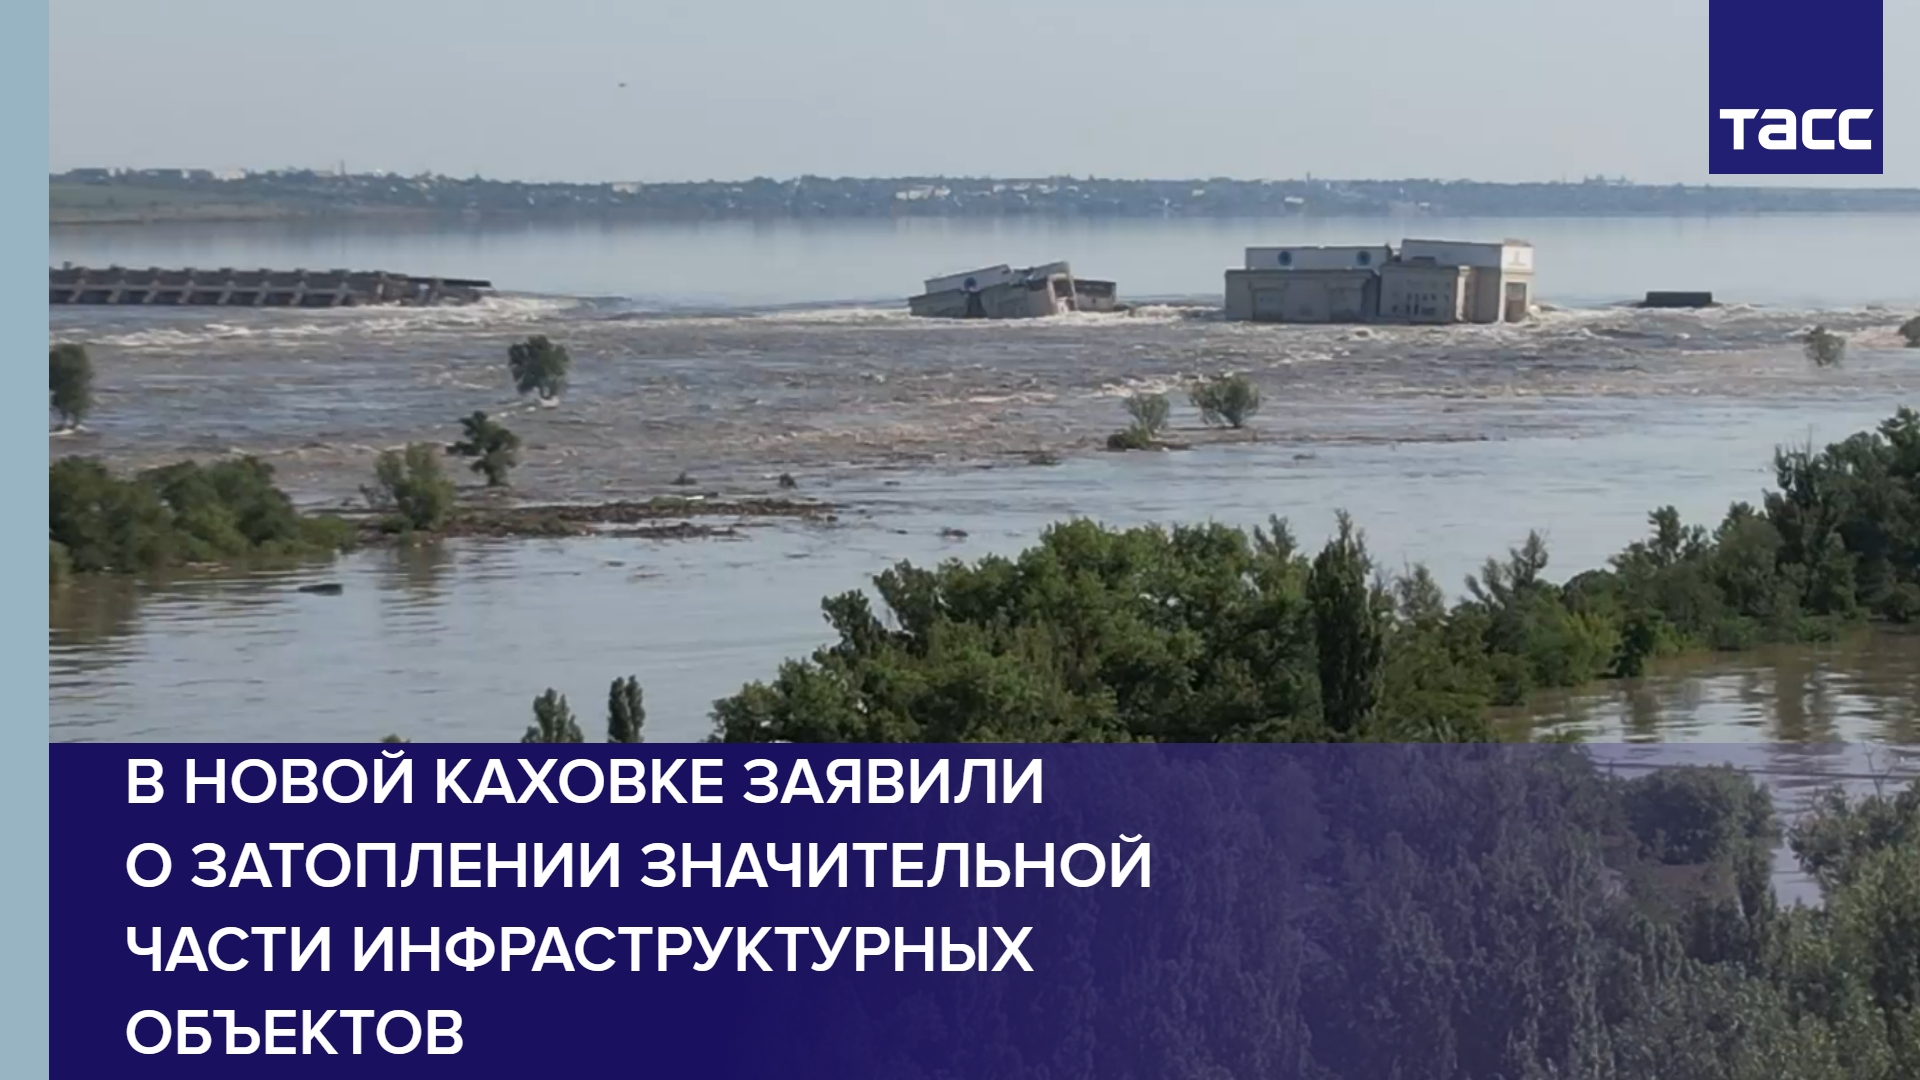 В Новой Каховке заявили о затоплении значительной части инфраструктурных объектов